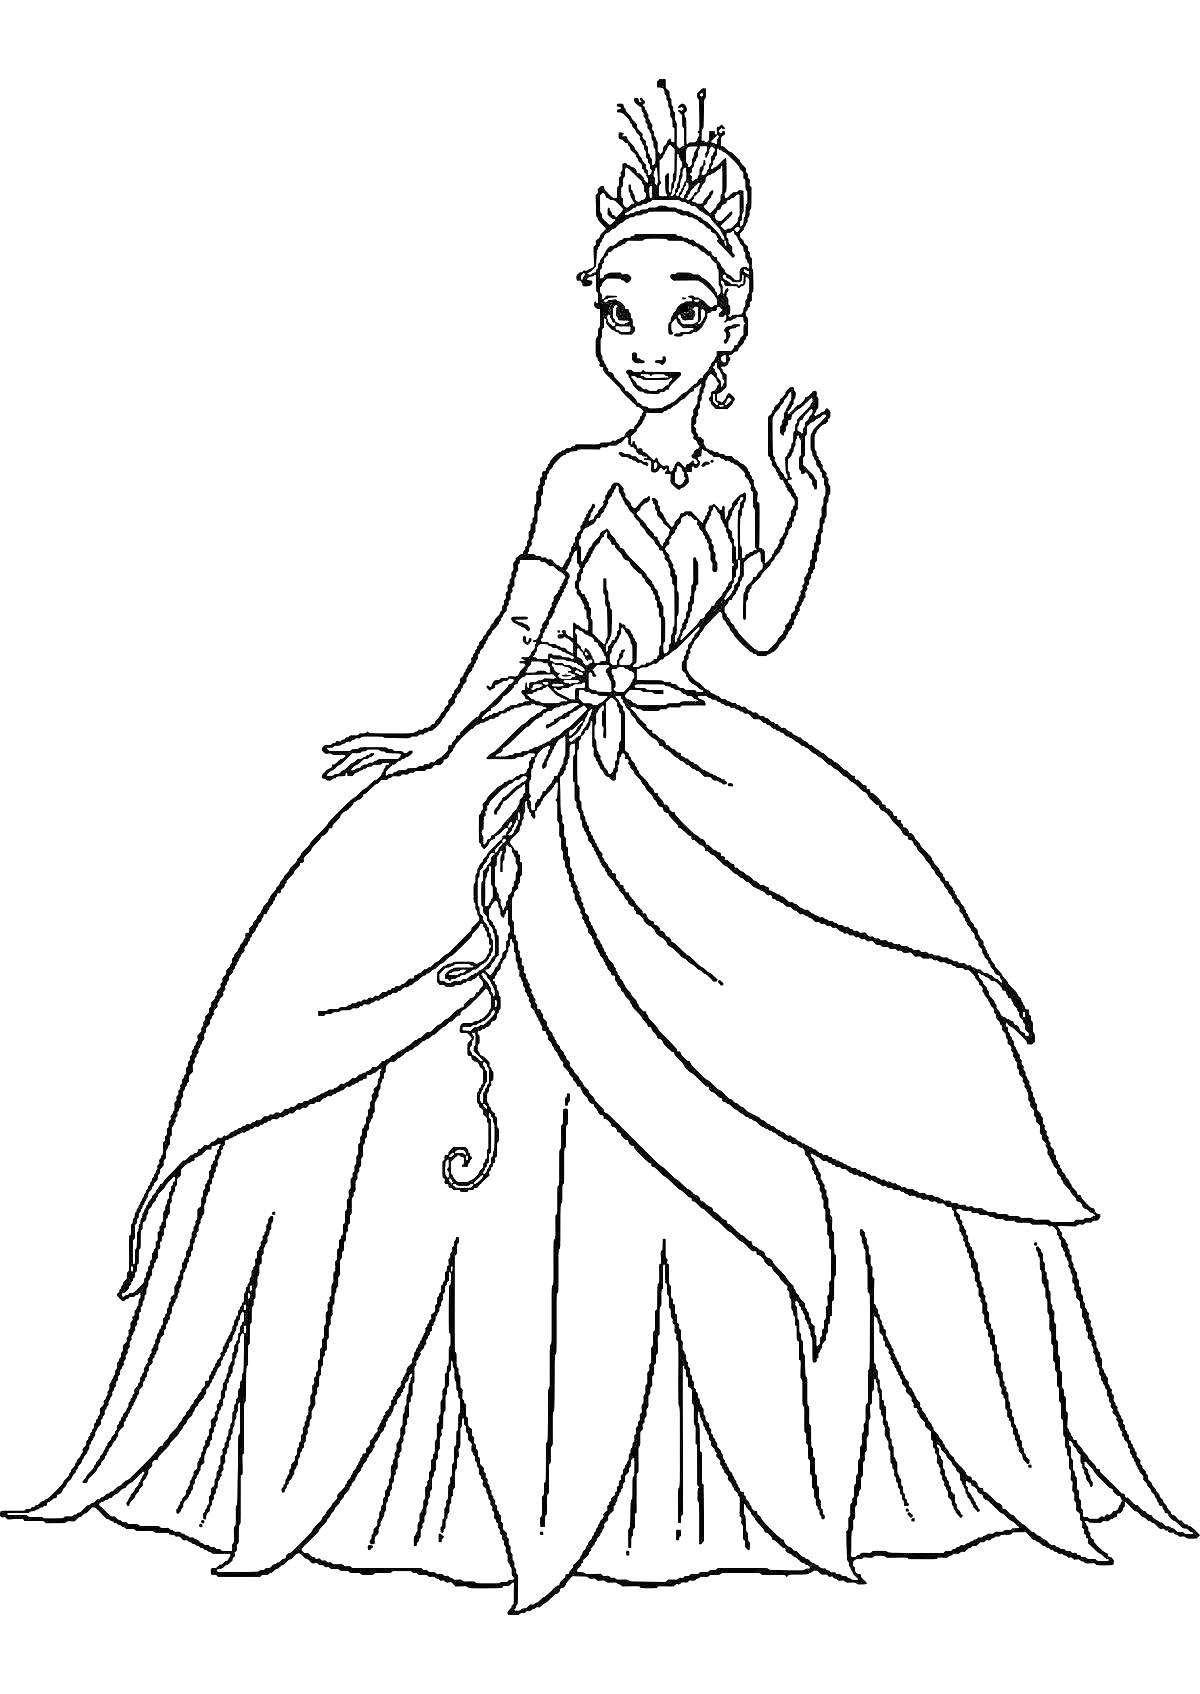 Раскраска Принцесса с тиарой и платьем с цветком